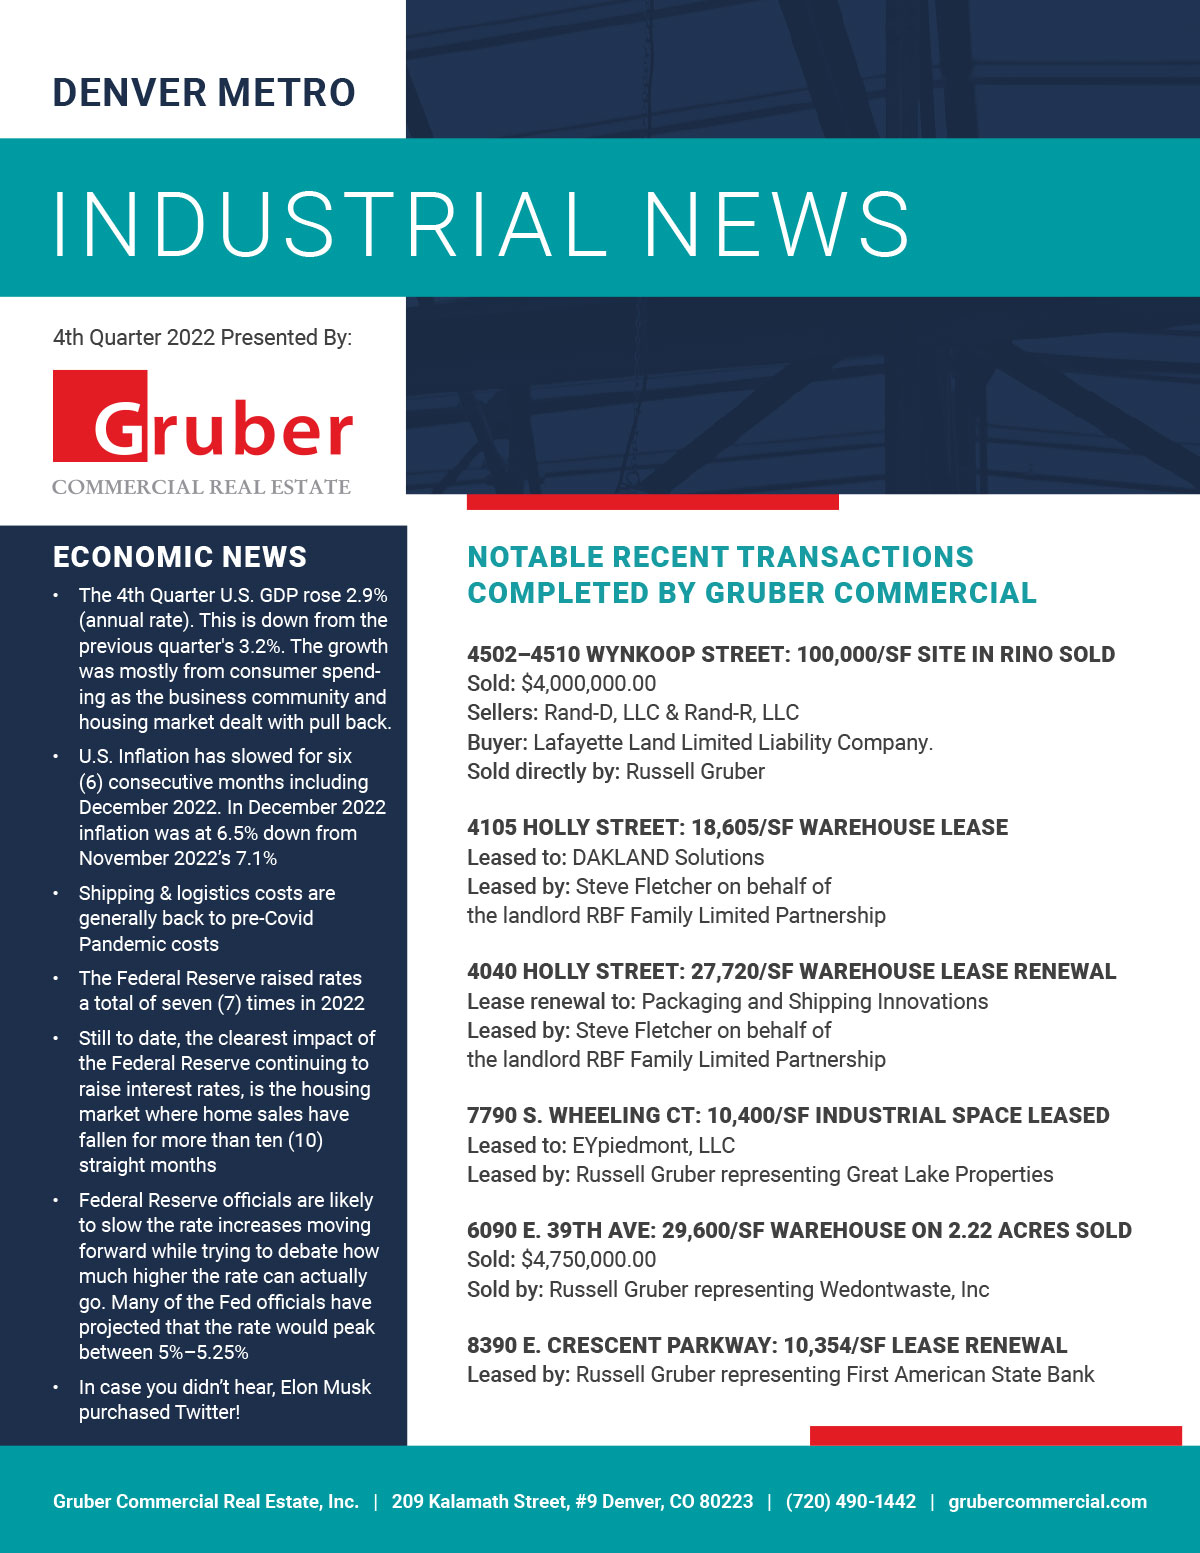 Gruber Newsletter: 4th Quarter 2022